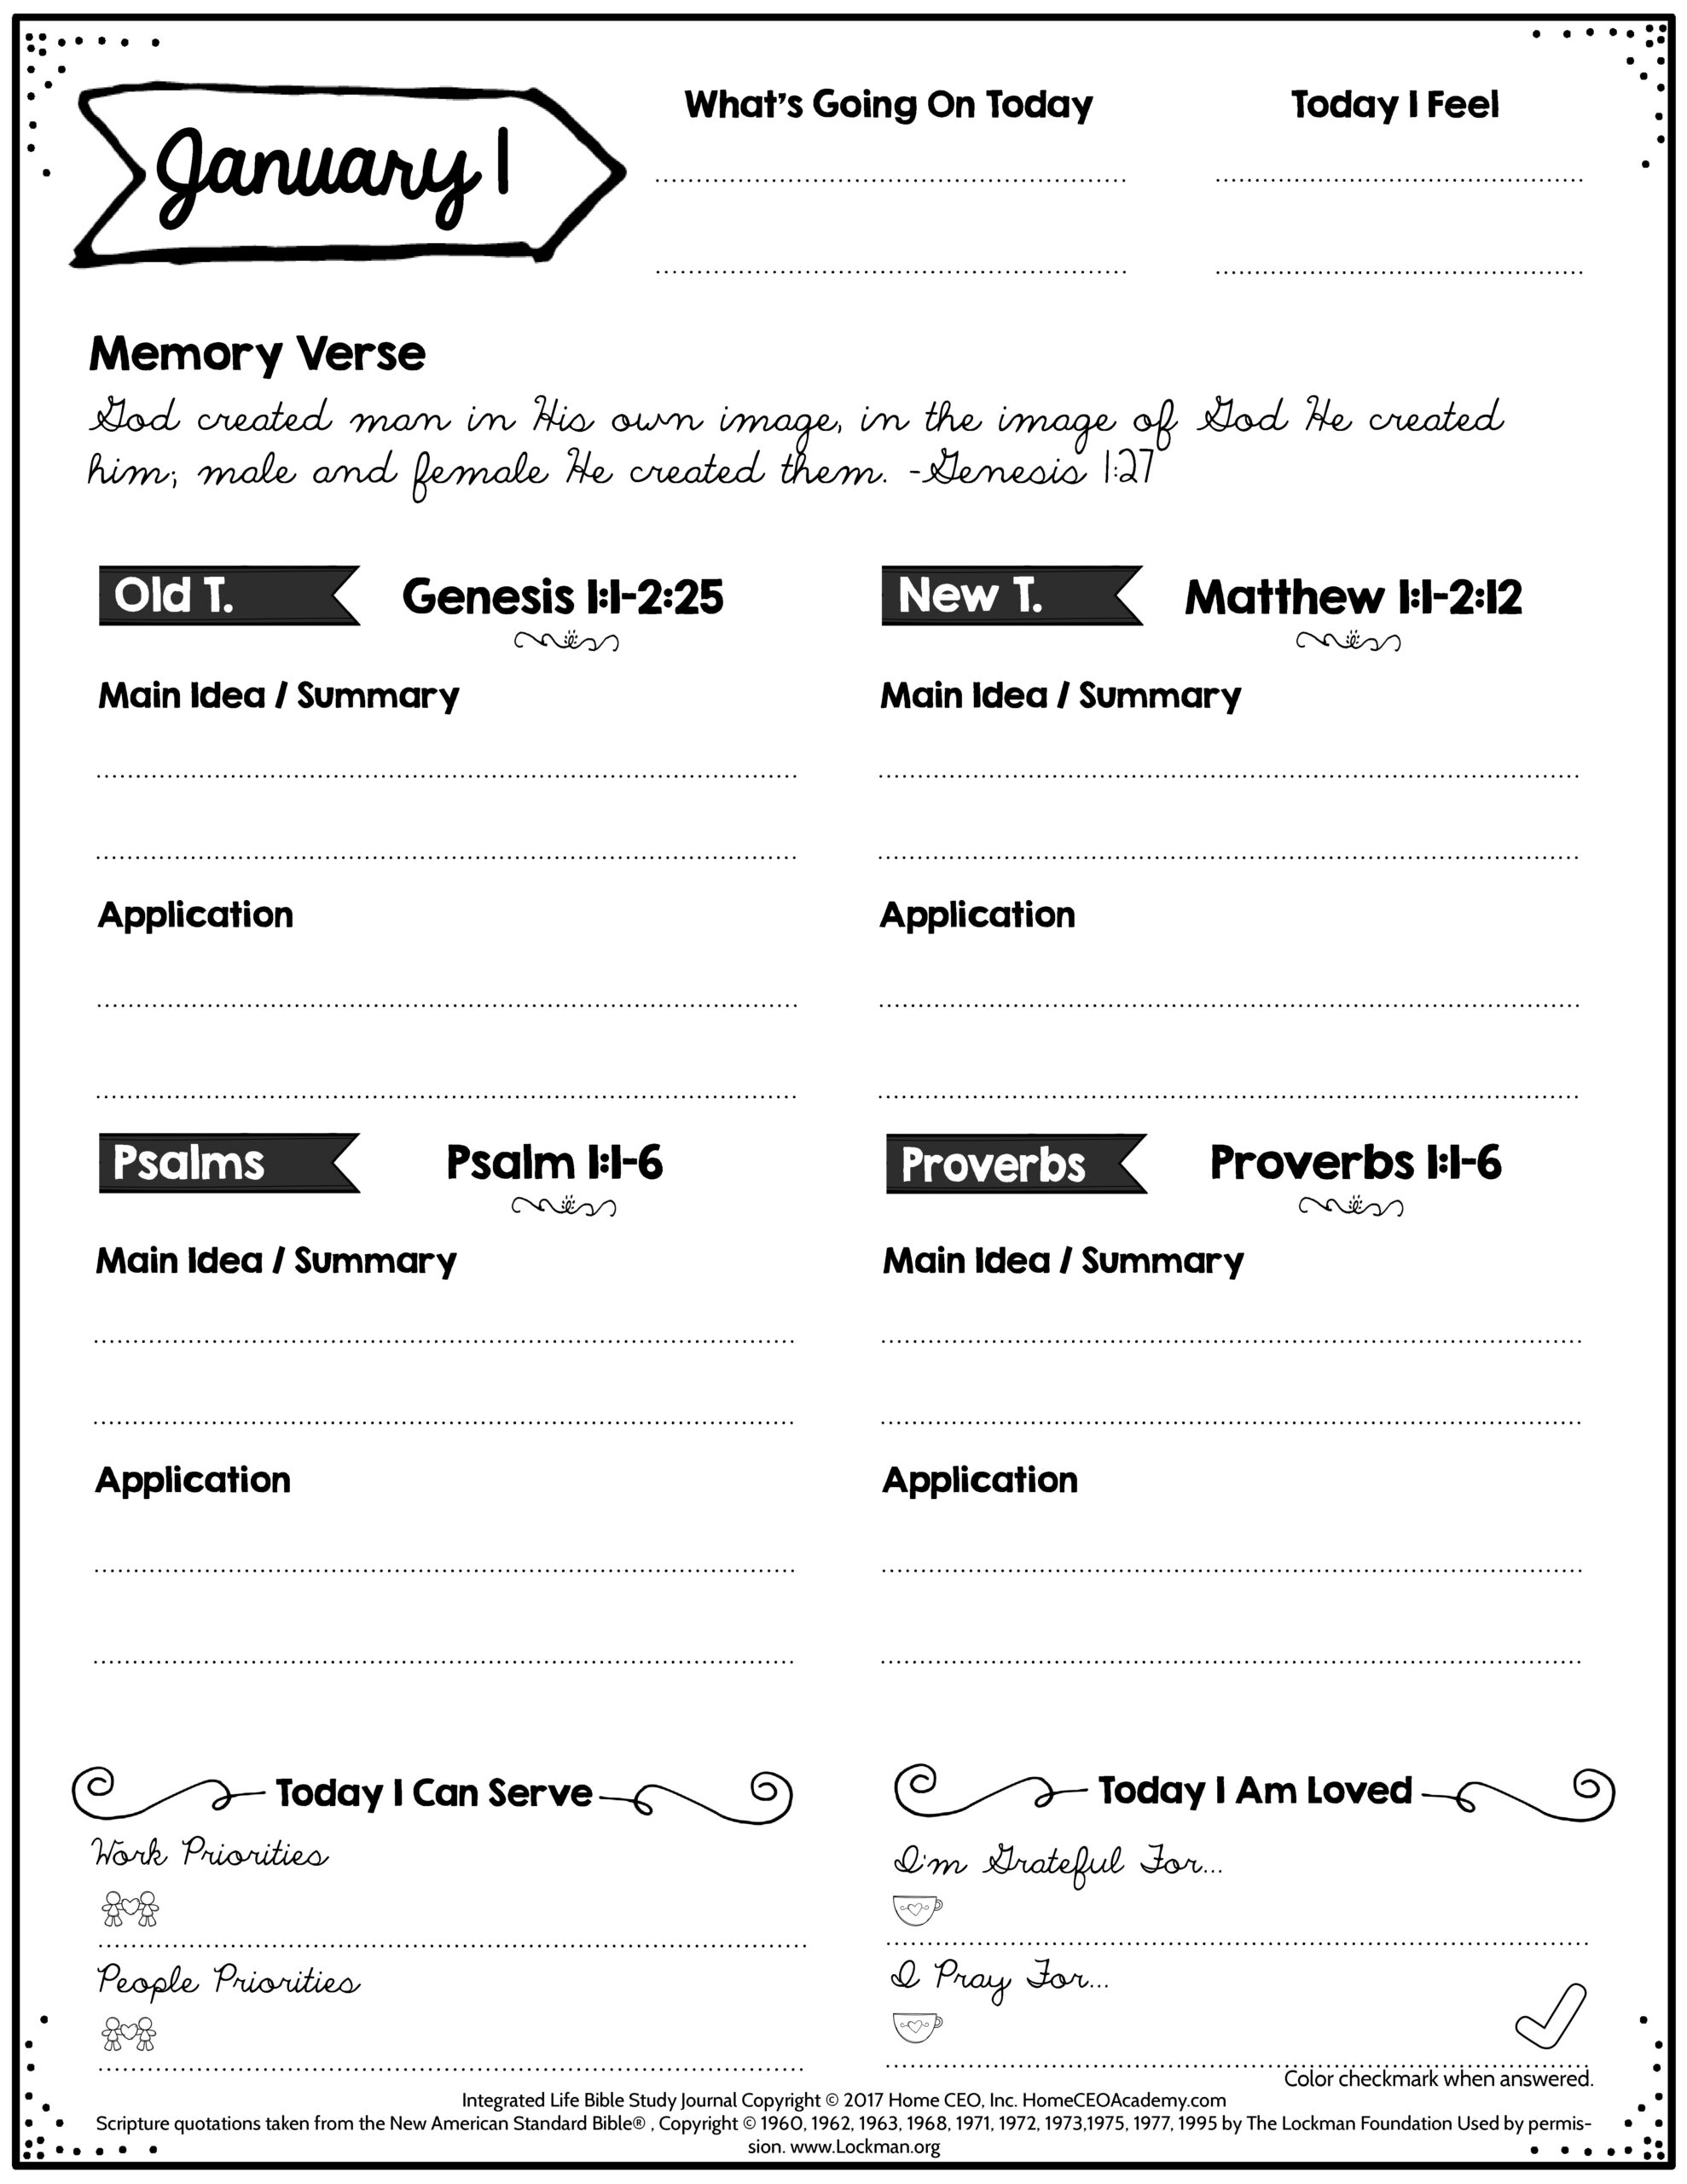 Free Bible Study Printables - Free Bible Study Printable Sheets